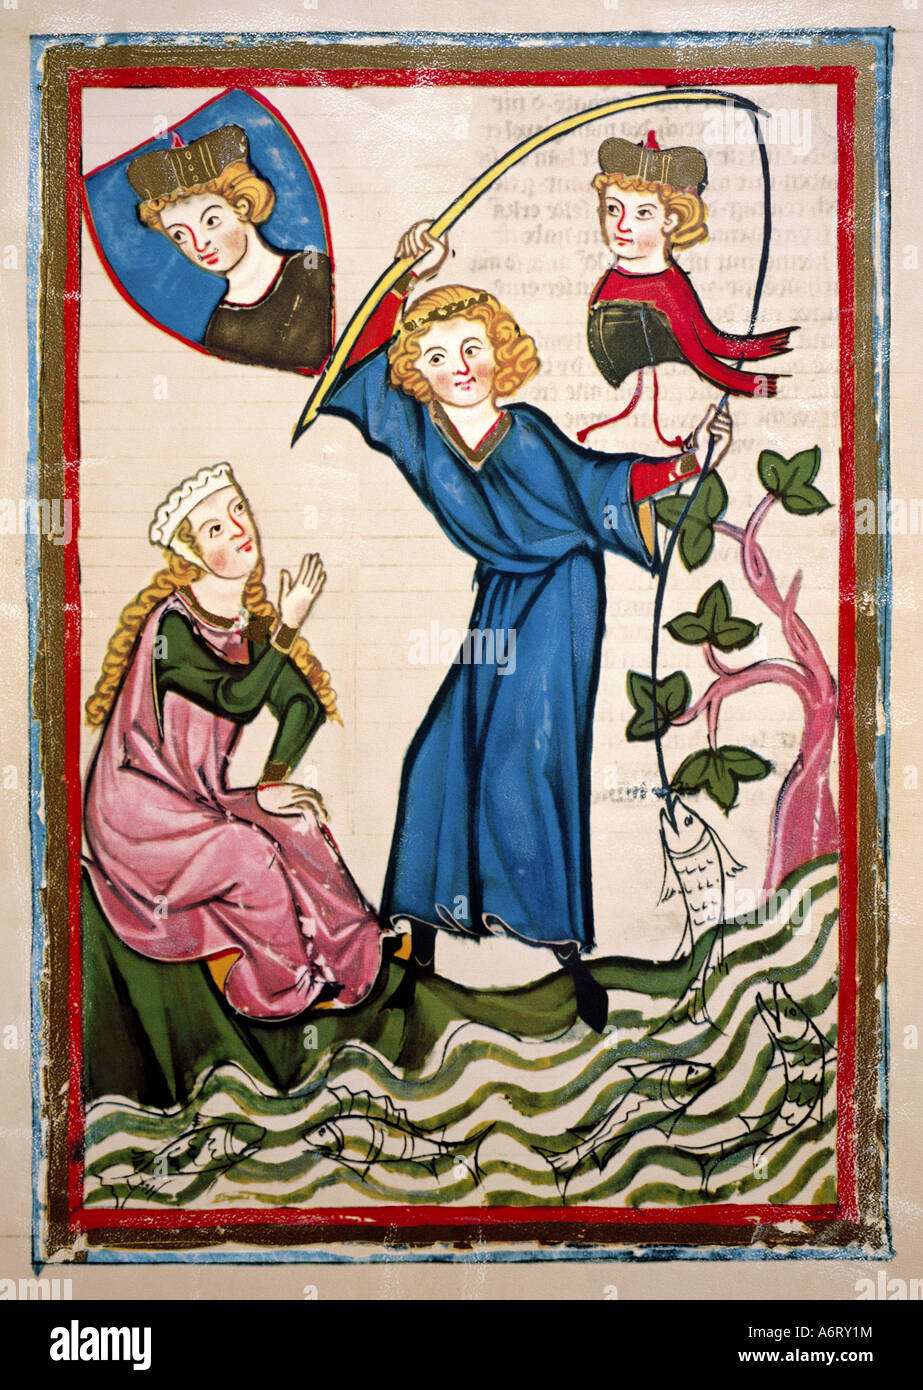 Belle arti, medioevo, gotico, illuminazione, Codex Manesse, Zurigo, 1305 - 1340, Master Pfeffel, coprendo il colore su carta pergamena, uni Foto Stock